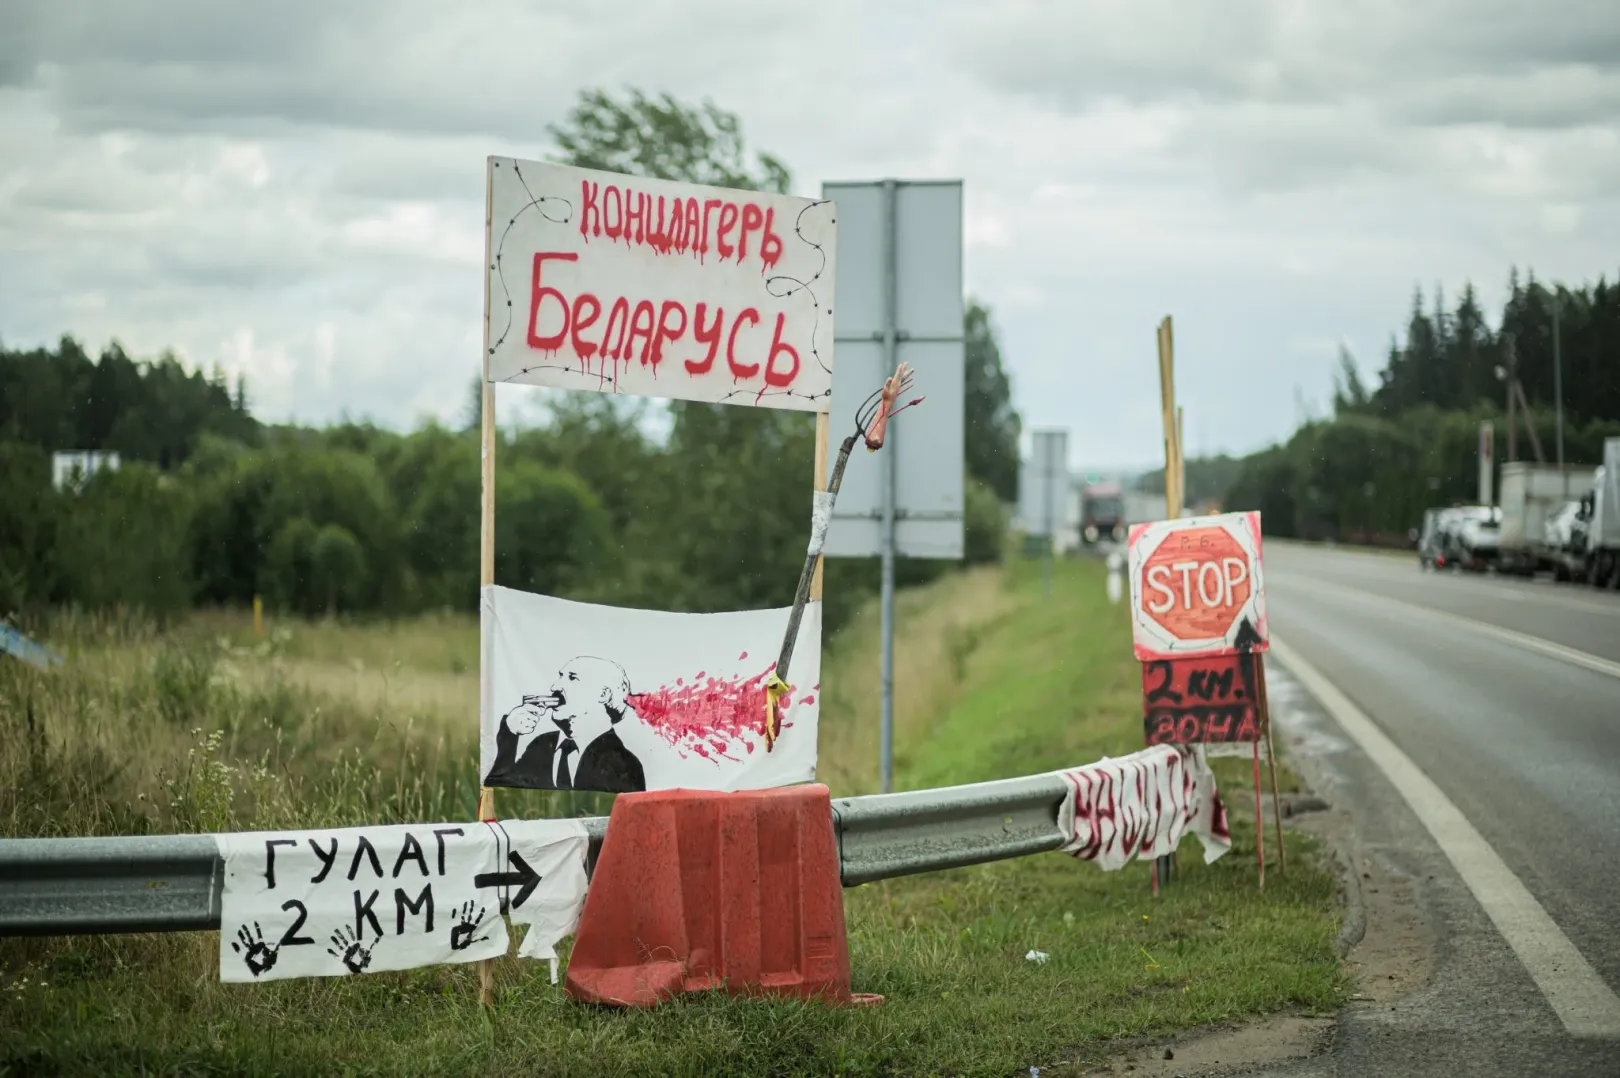 Tiltakozó feliratok a litván–belarusz határon. A szöveg: „Gulag 2km", „Belarusz koncentrációs tábor” – Fotó: Denis Vejas / Ereb.eu